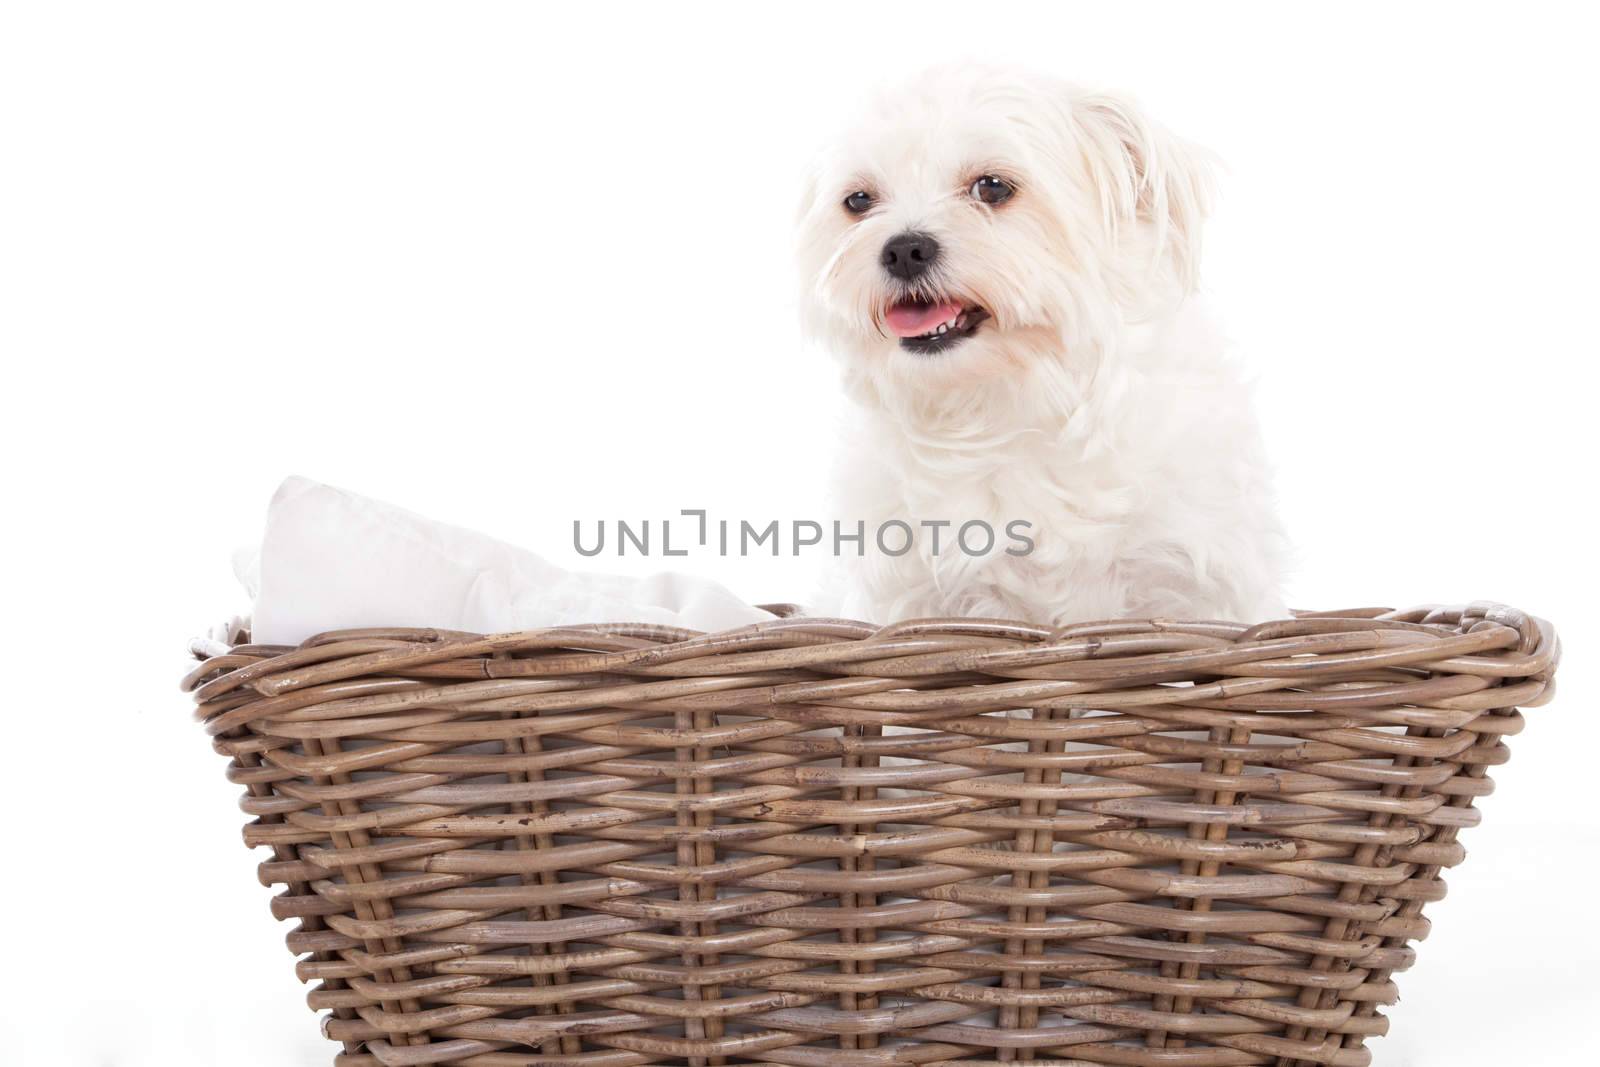 Maltezer in a basket by DNFStyle